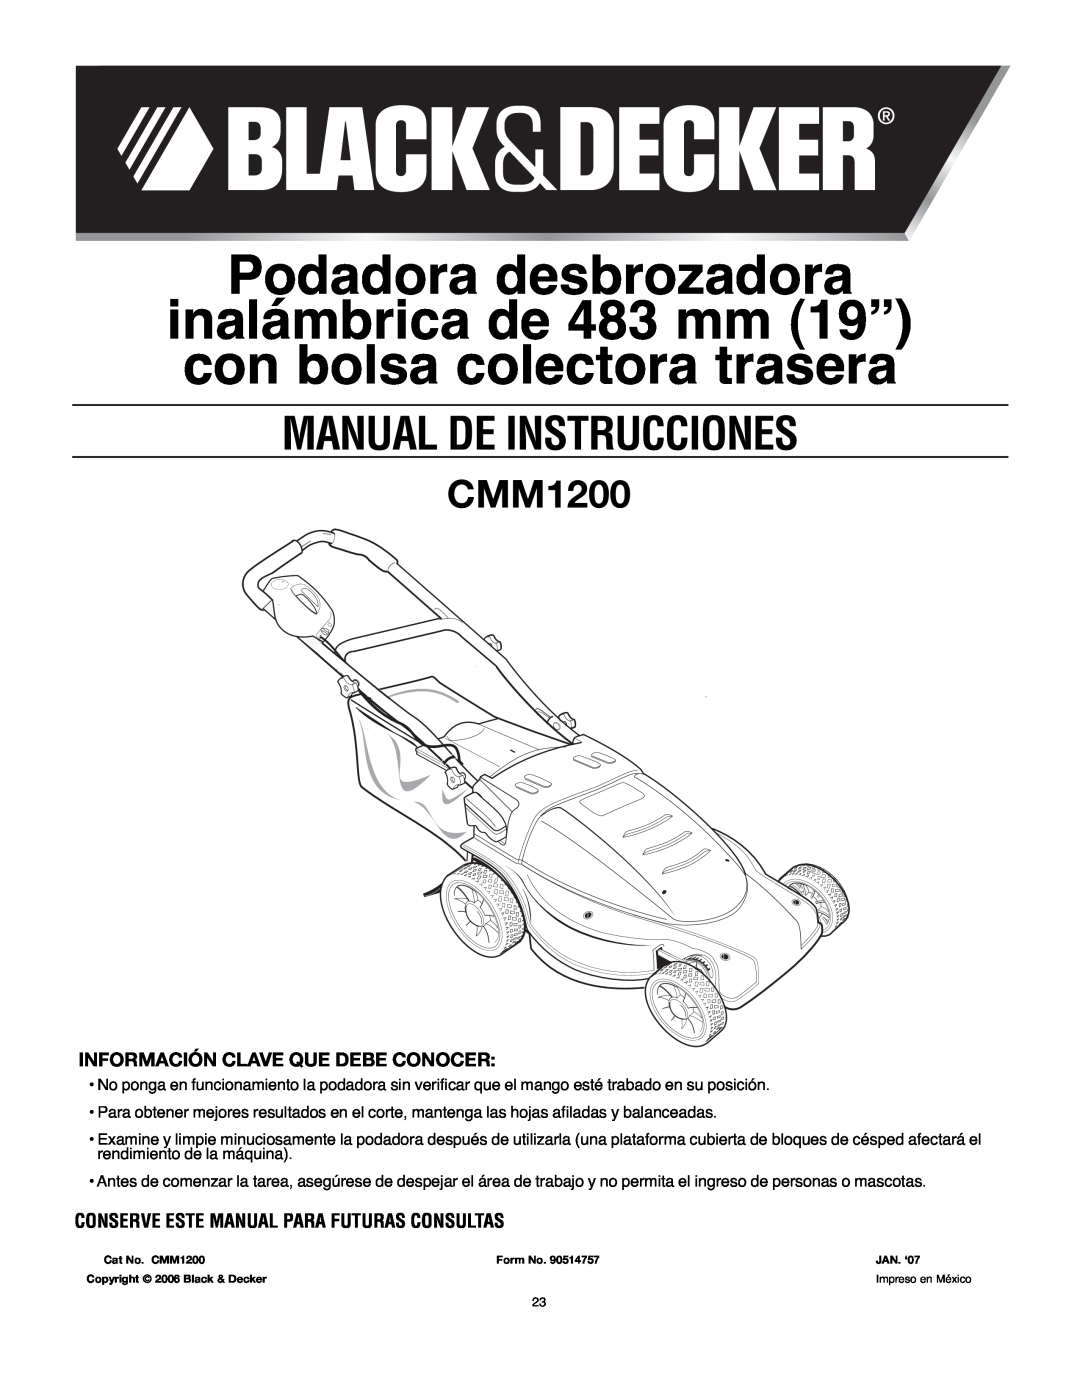 Black & Decker 90514757 Podadora desbrozadora, Información Clave Que Debe Conocer, Manual De Instrucciones, CMM1200 